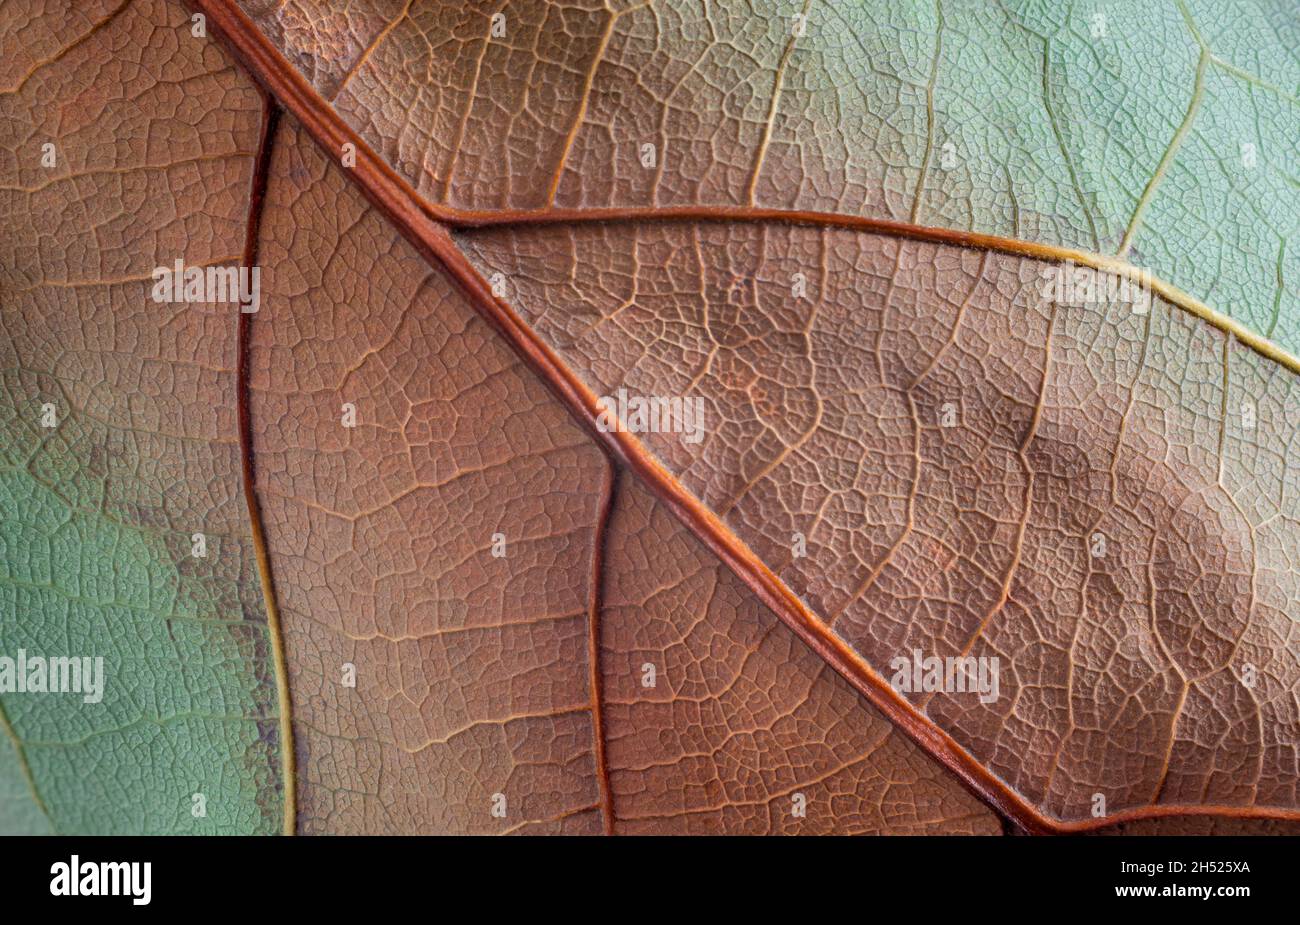 trama di fondo a foglie secche, astratto di toni rossi, marroni e teali, vista closeup, macro Foto Stock